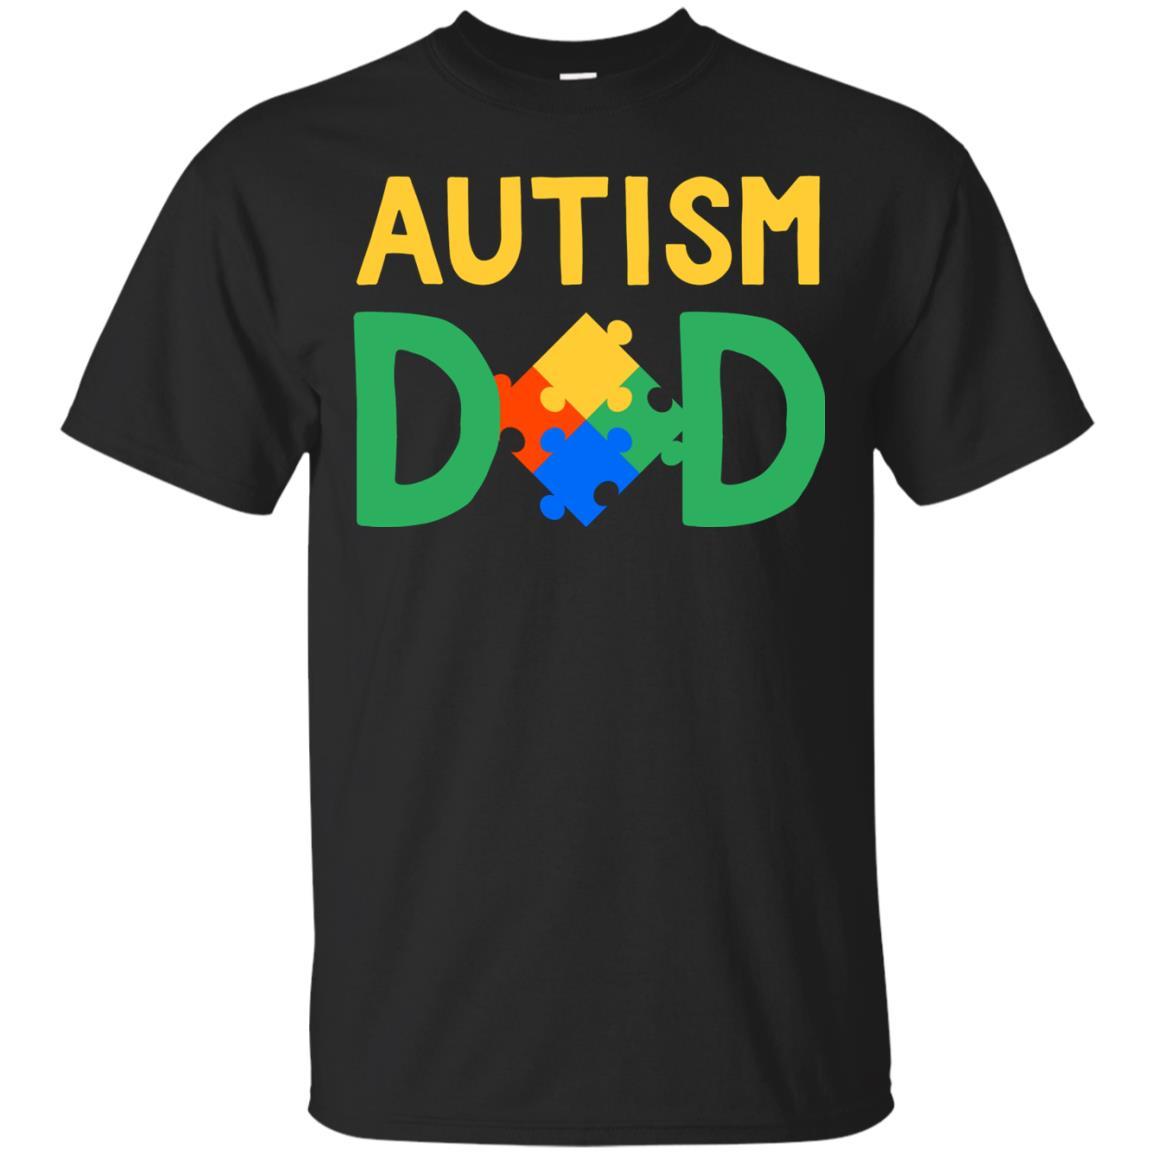 Autism Awareness Dad Shirts Special April National Day